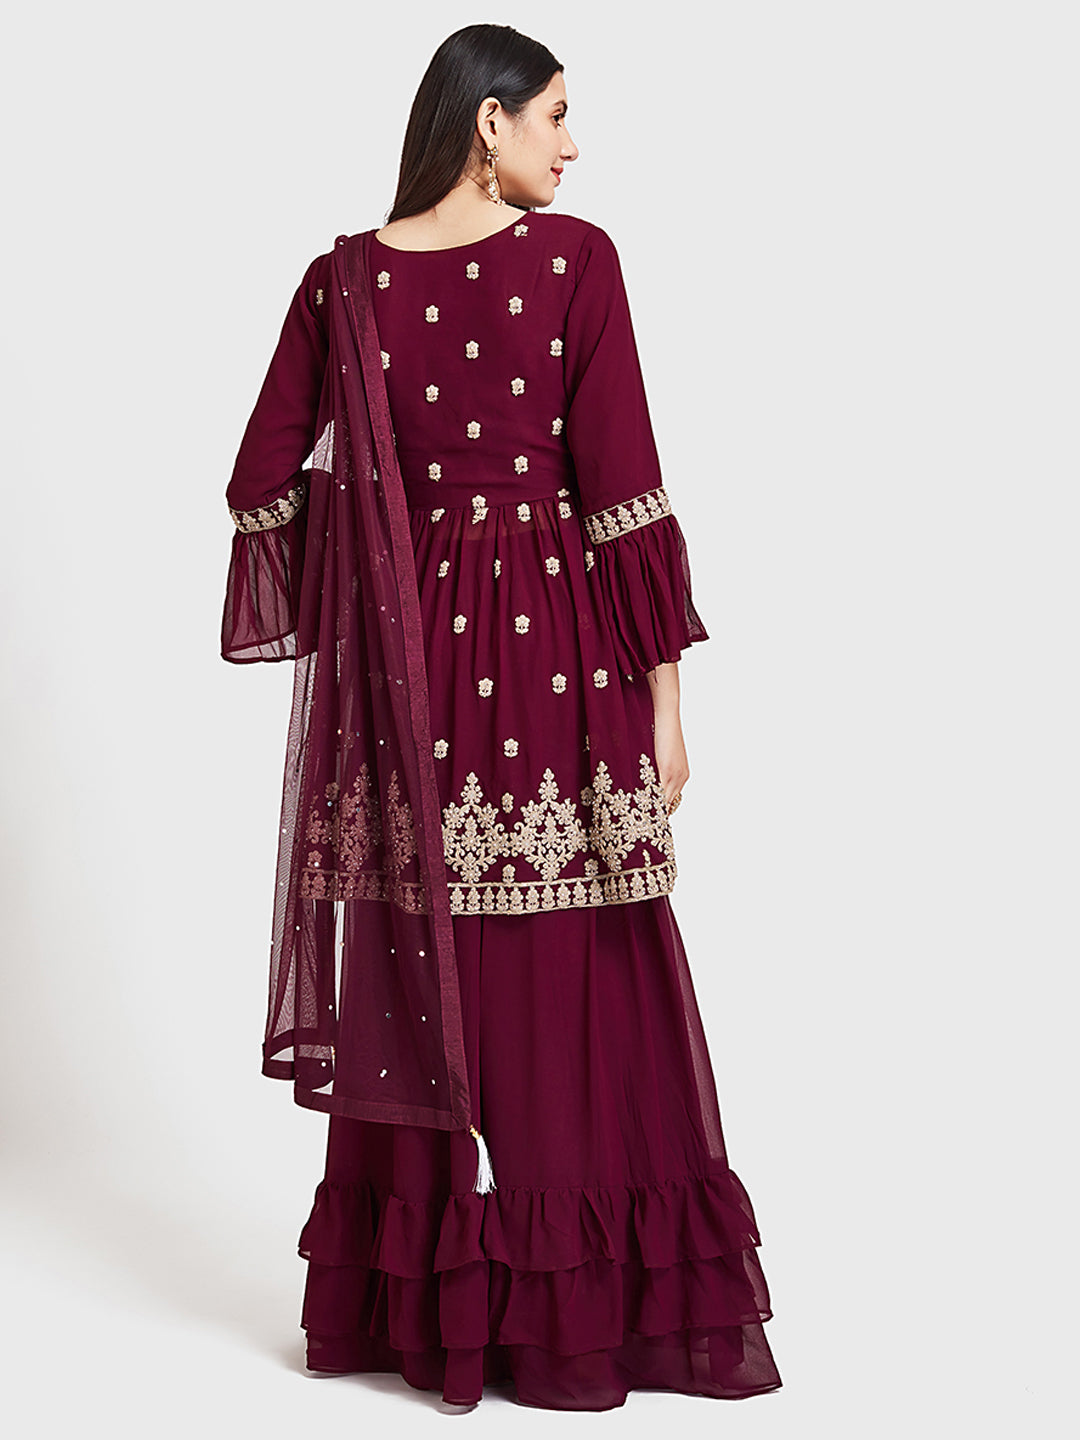 Neeru's Wine Color Georgette Fabric Suit-Short Anarkali